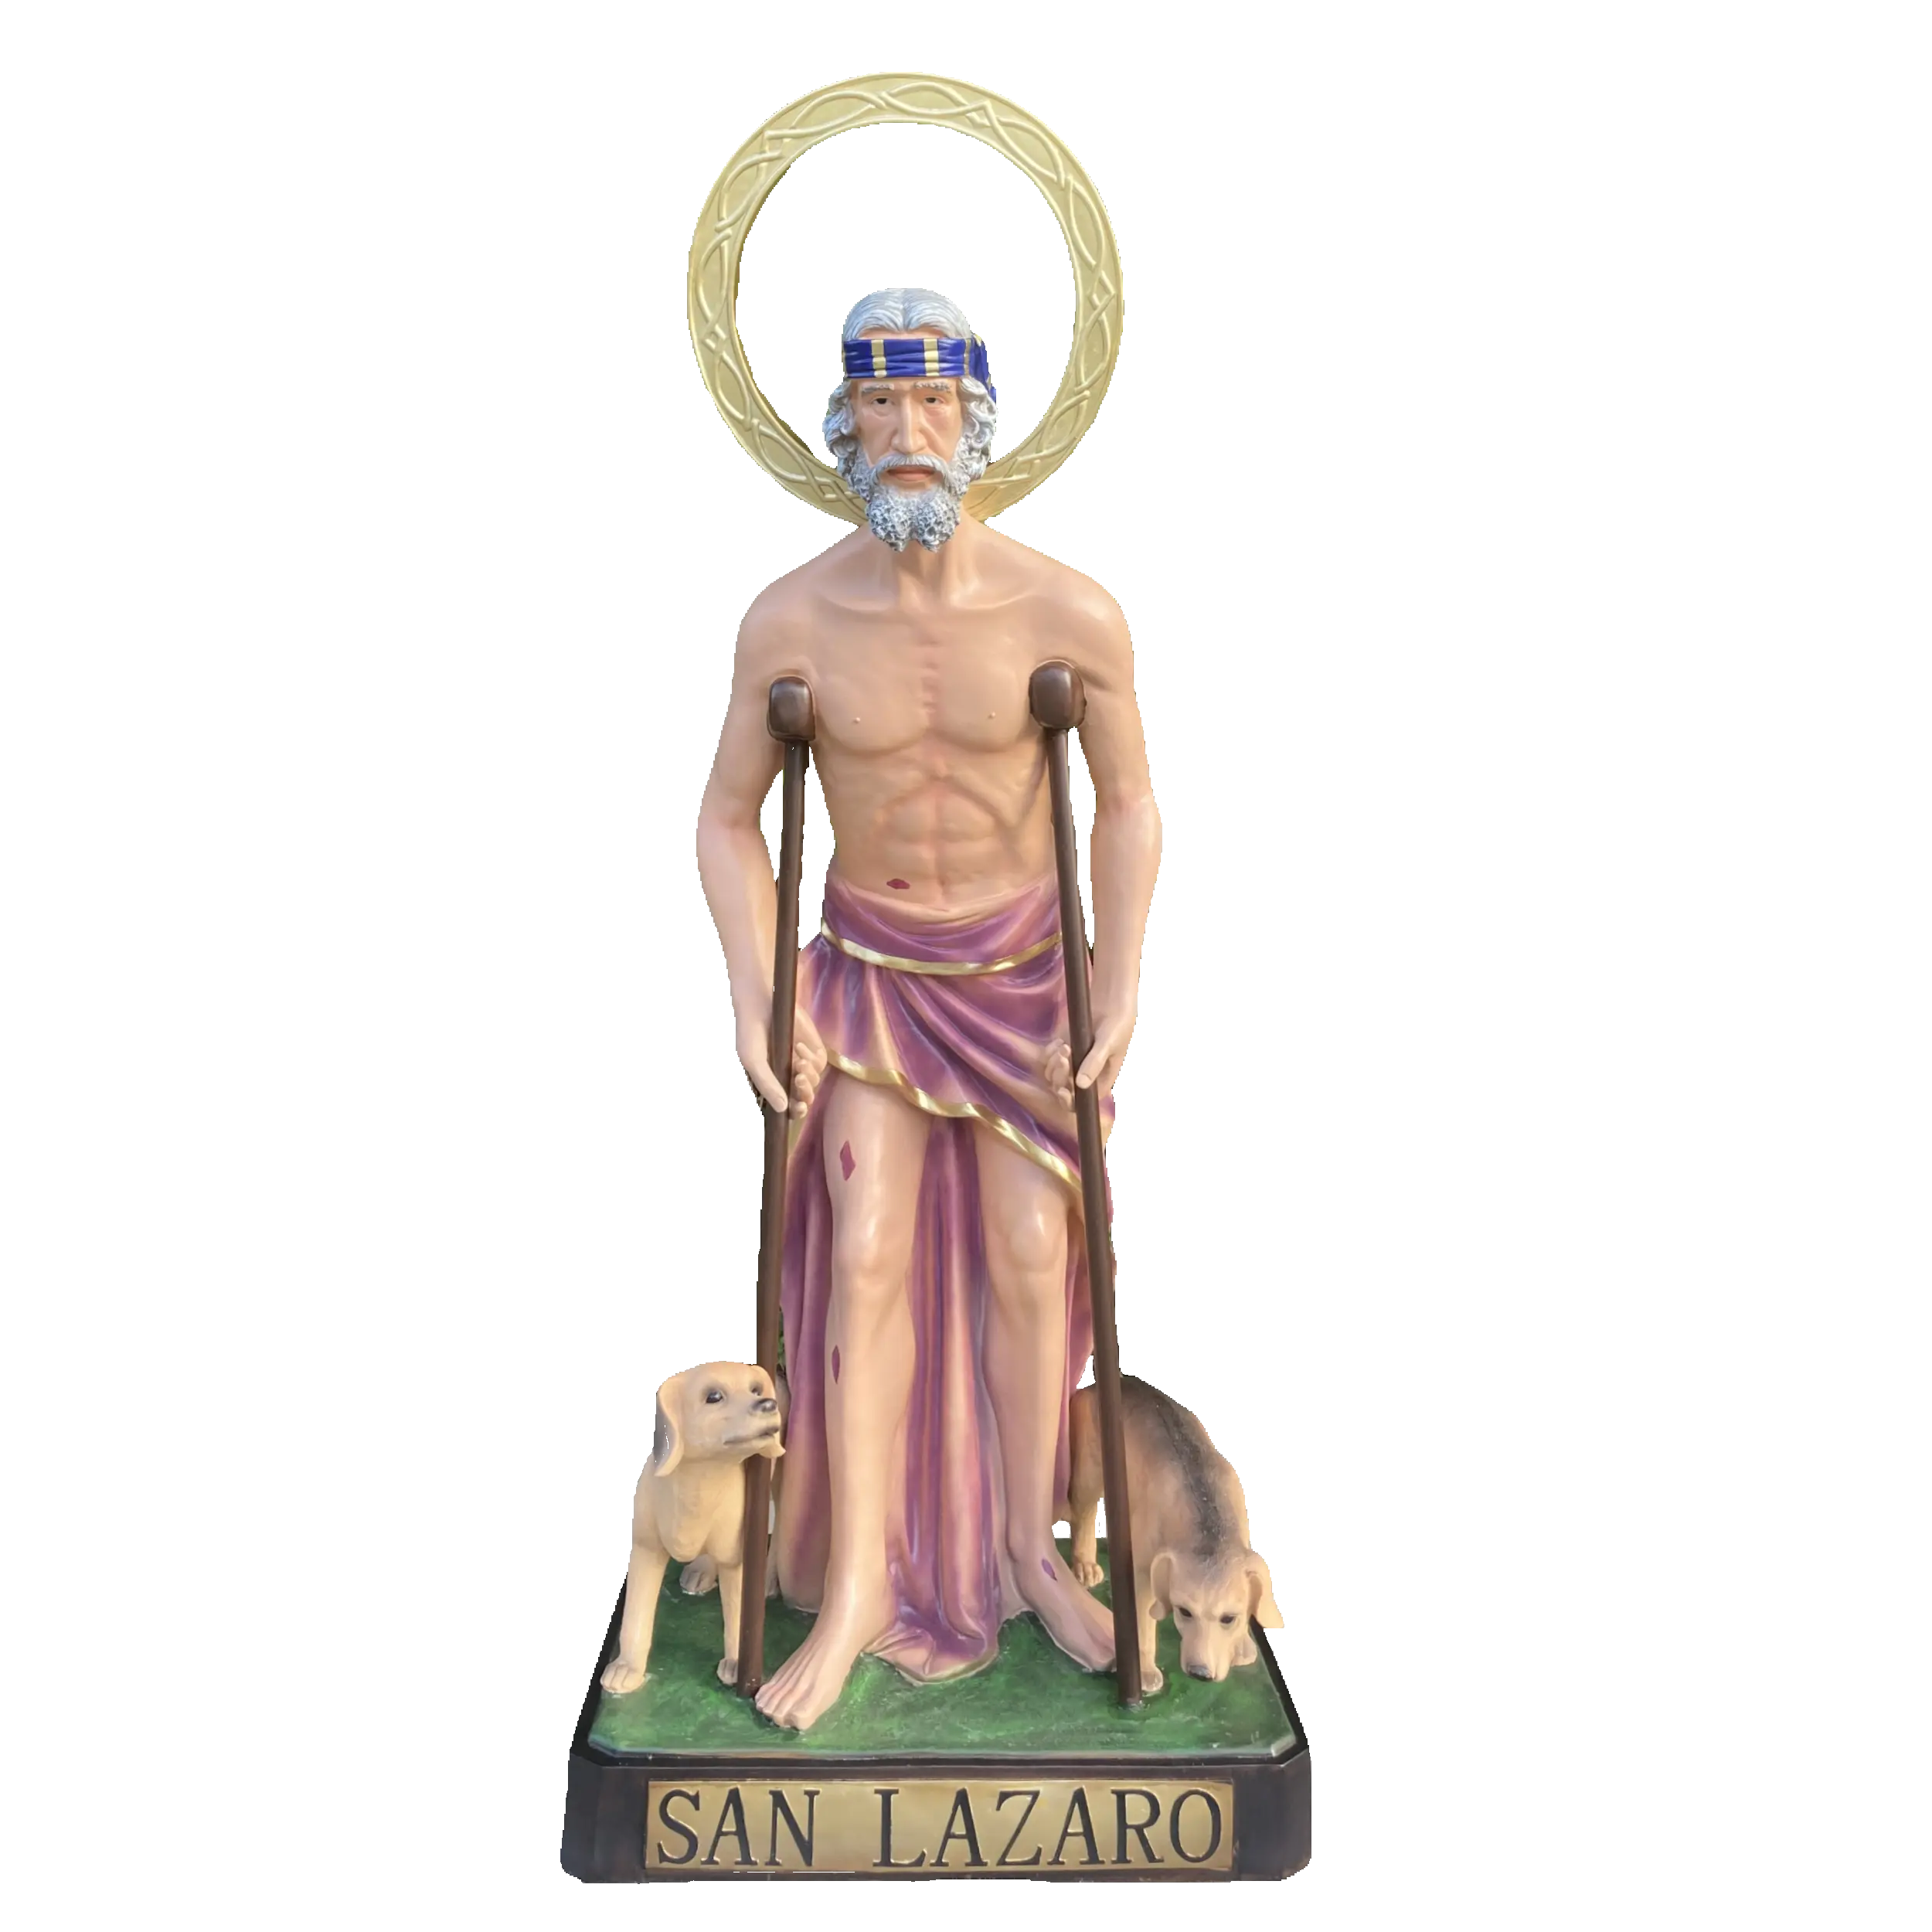 Figura católica jardín al aire libre Iglesia Católica decoración estatua de tamaño natural artesanía de resina San Lázaro estatua de San Lázaro